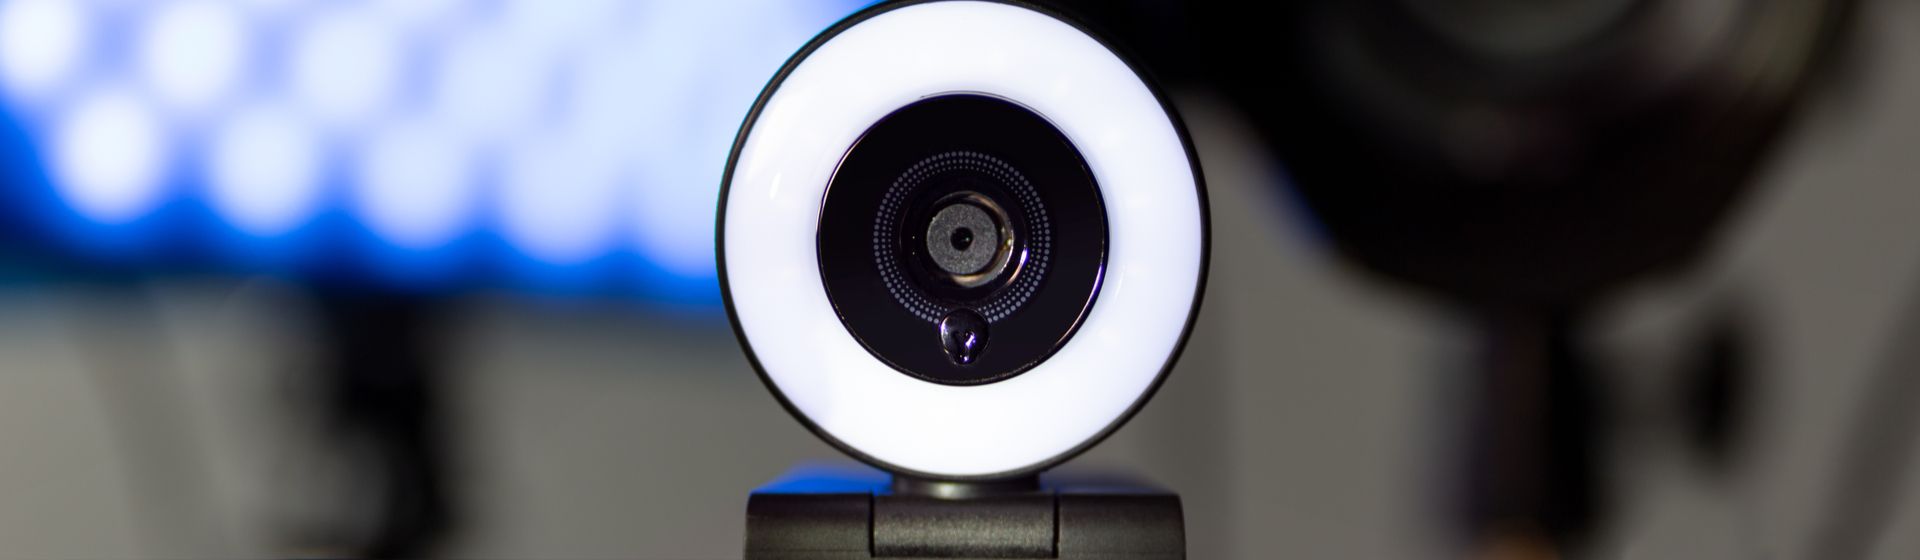 Melhor webcam para PC em 2021: 6 modelos para comprar